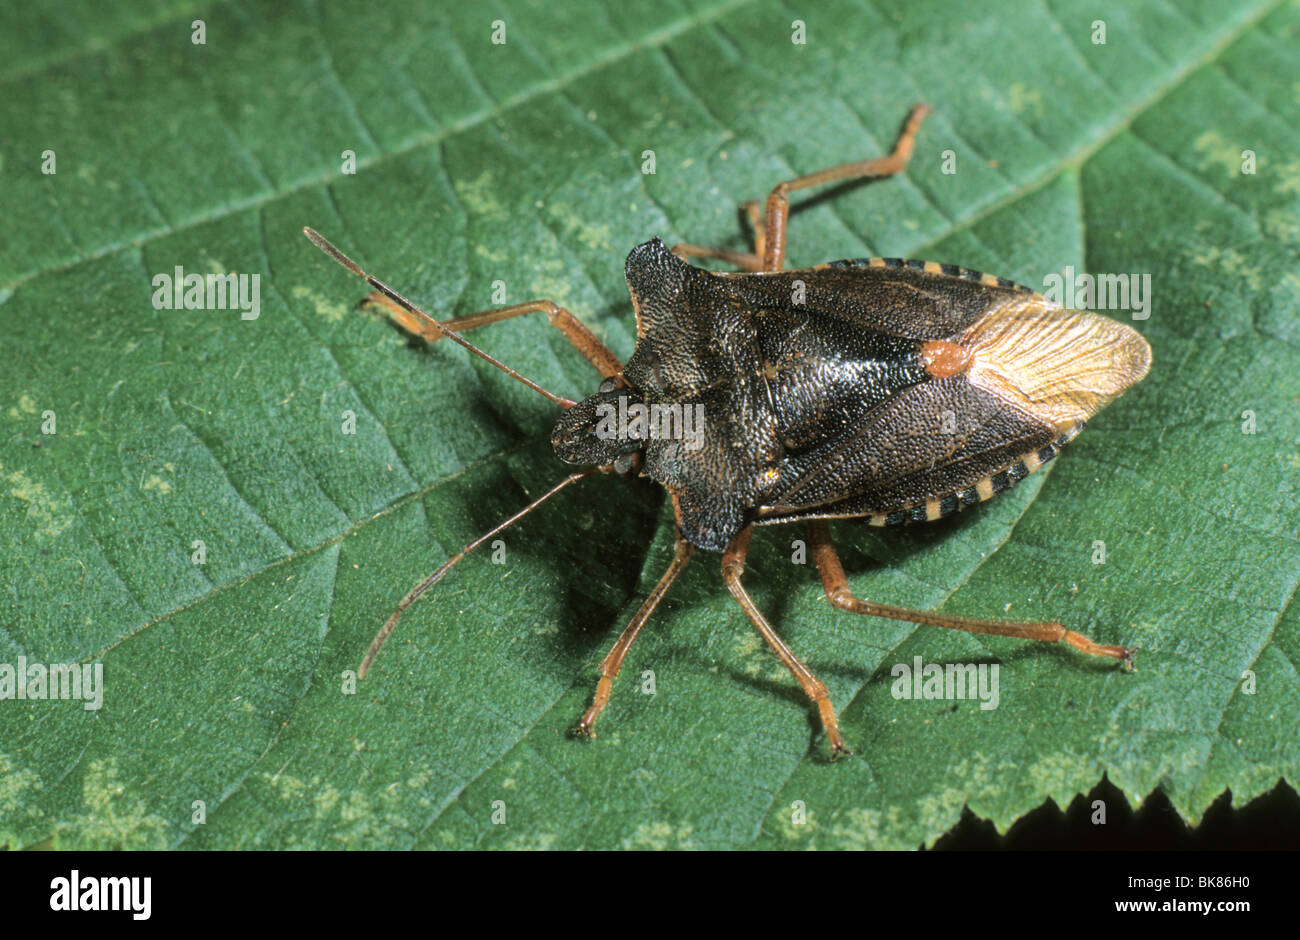 Forest bug (Pentatoma rufipes) Stock Photo